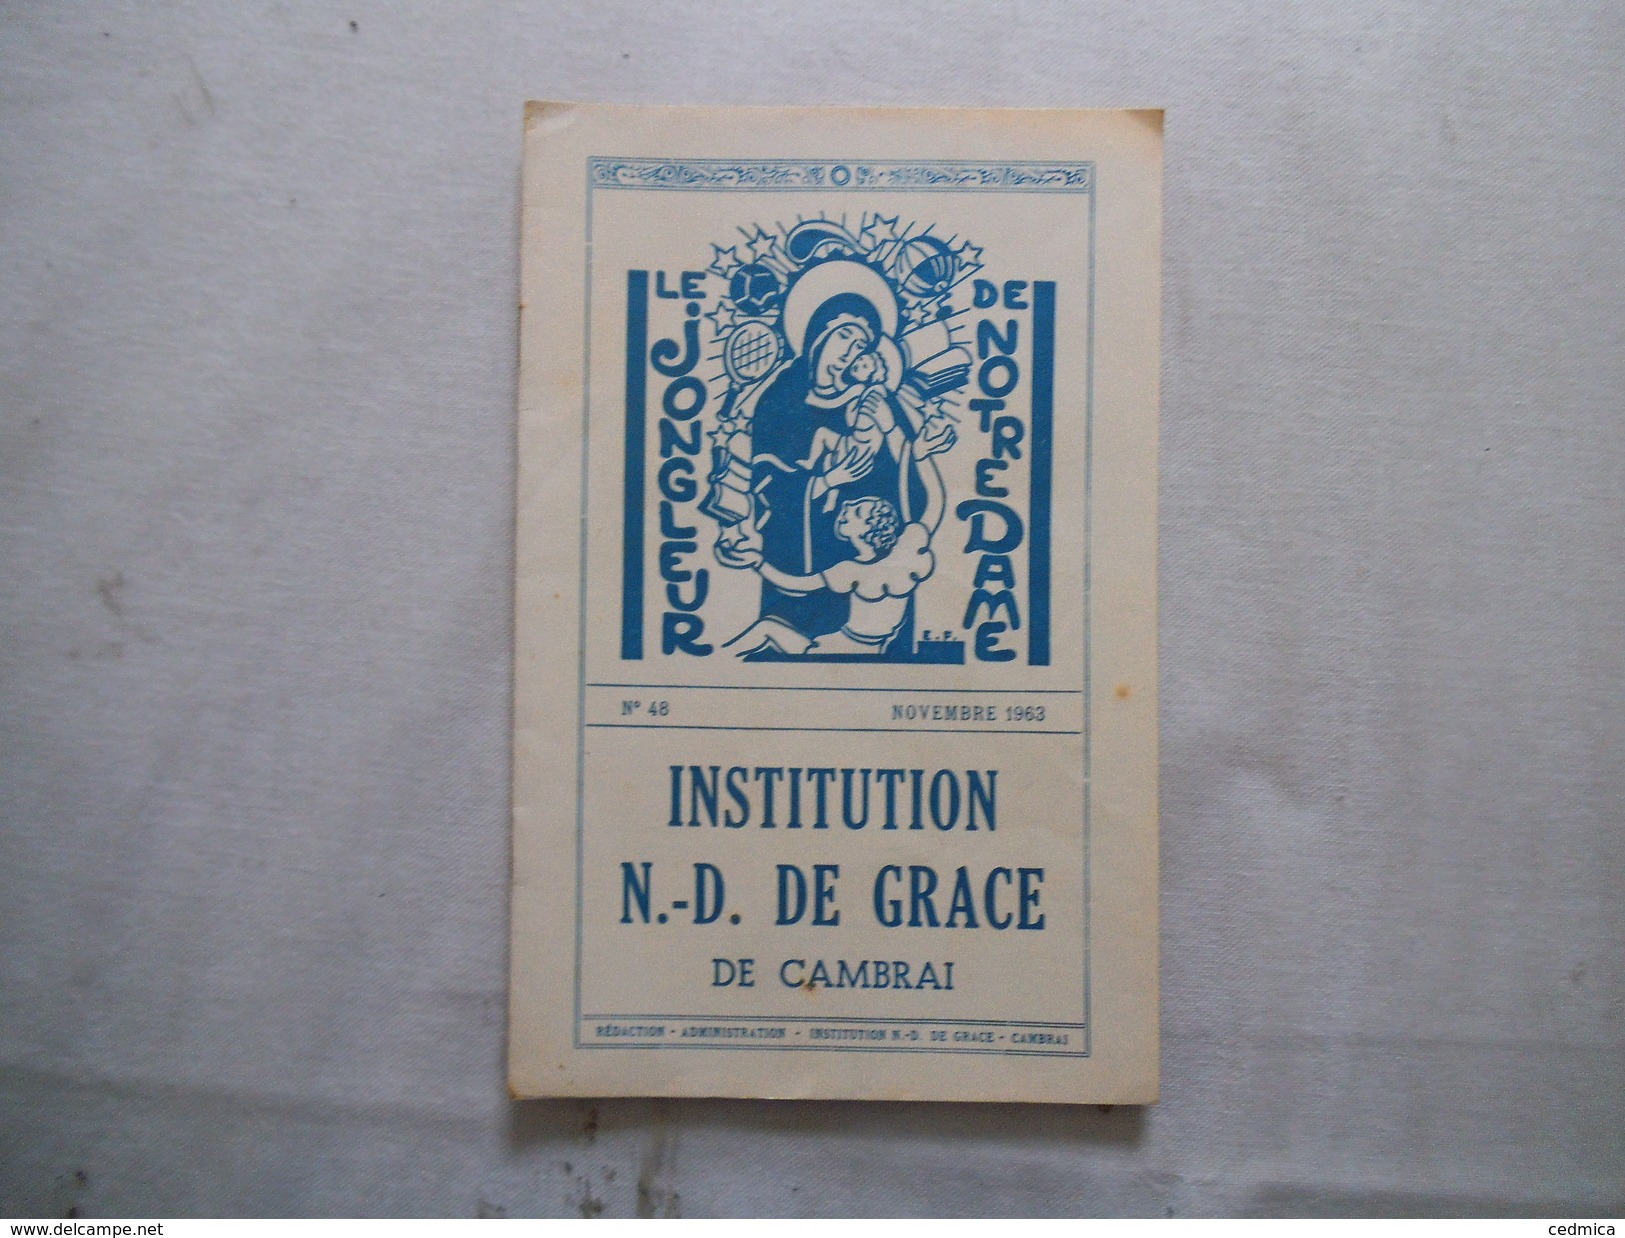 CAMBRAI INSTITUTION NOTRE-DAME DE GRACE LE JONGLEUR DE NOTRE DAME N°48 NOVEMBRE 1963 - Religion & Esotérisme